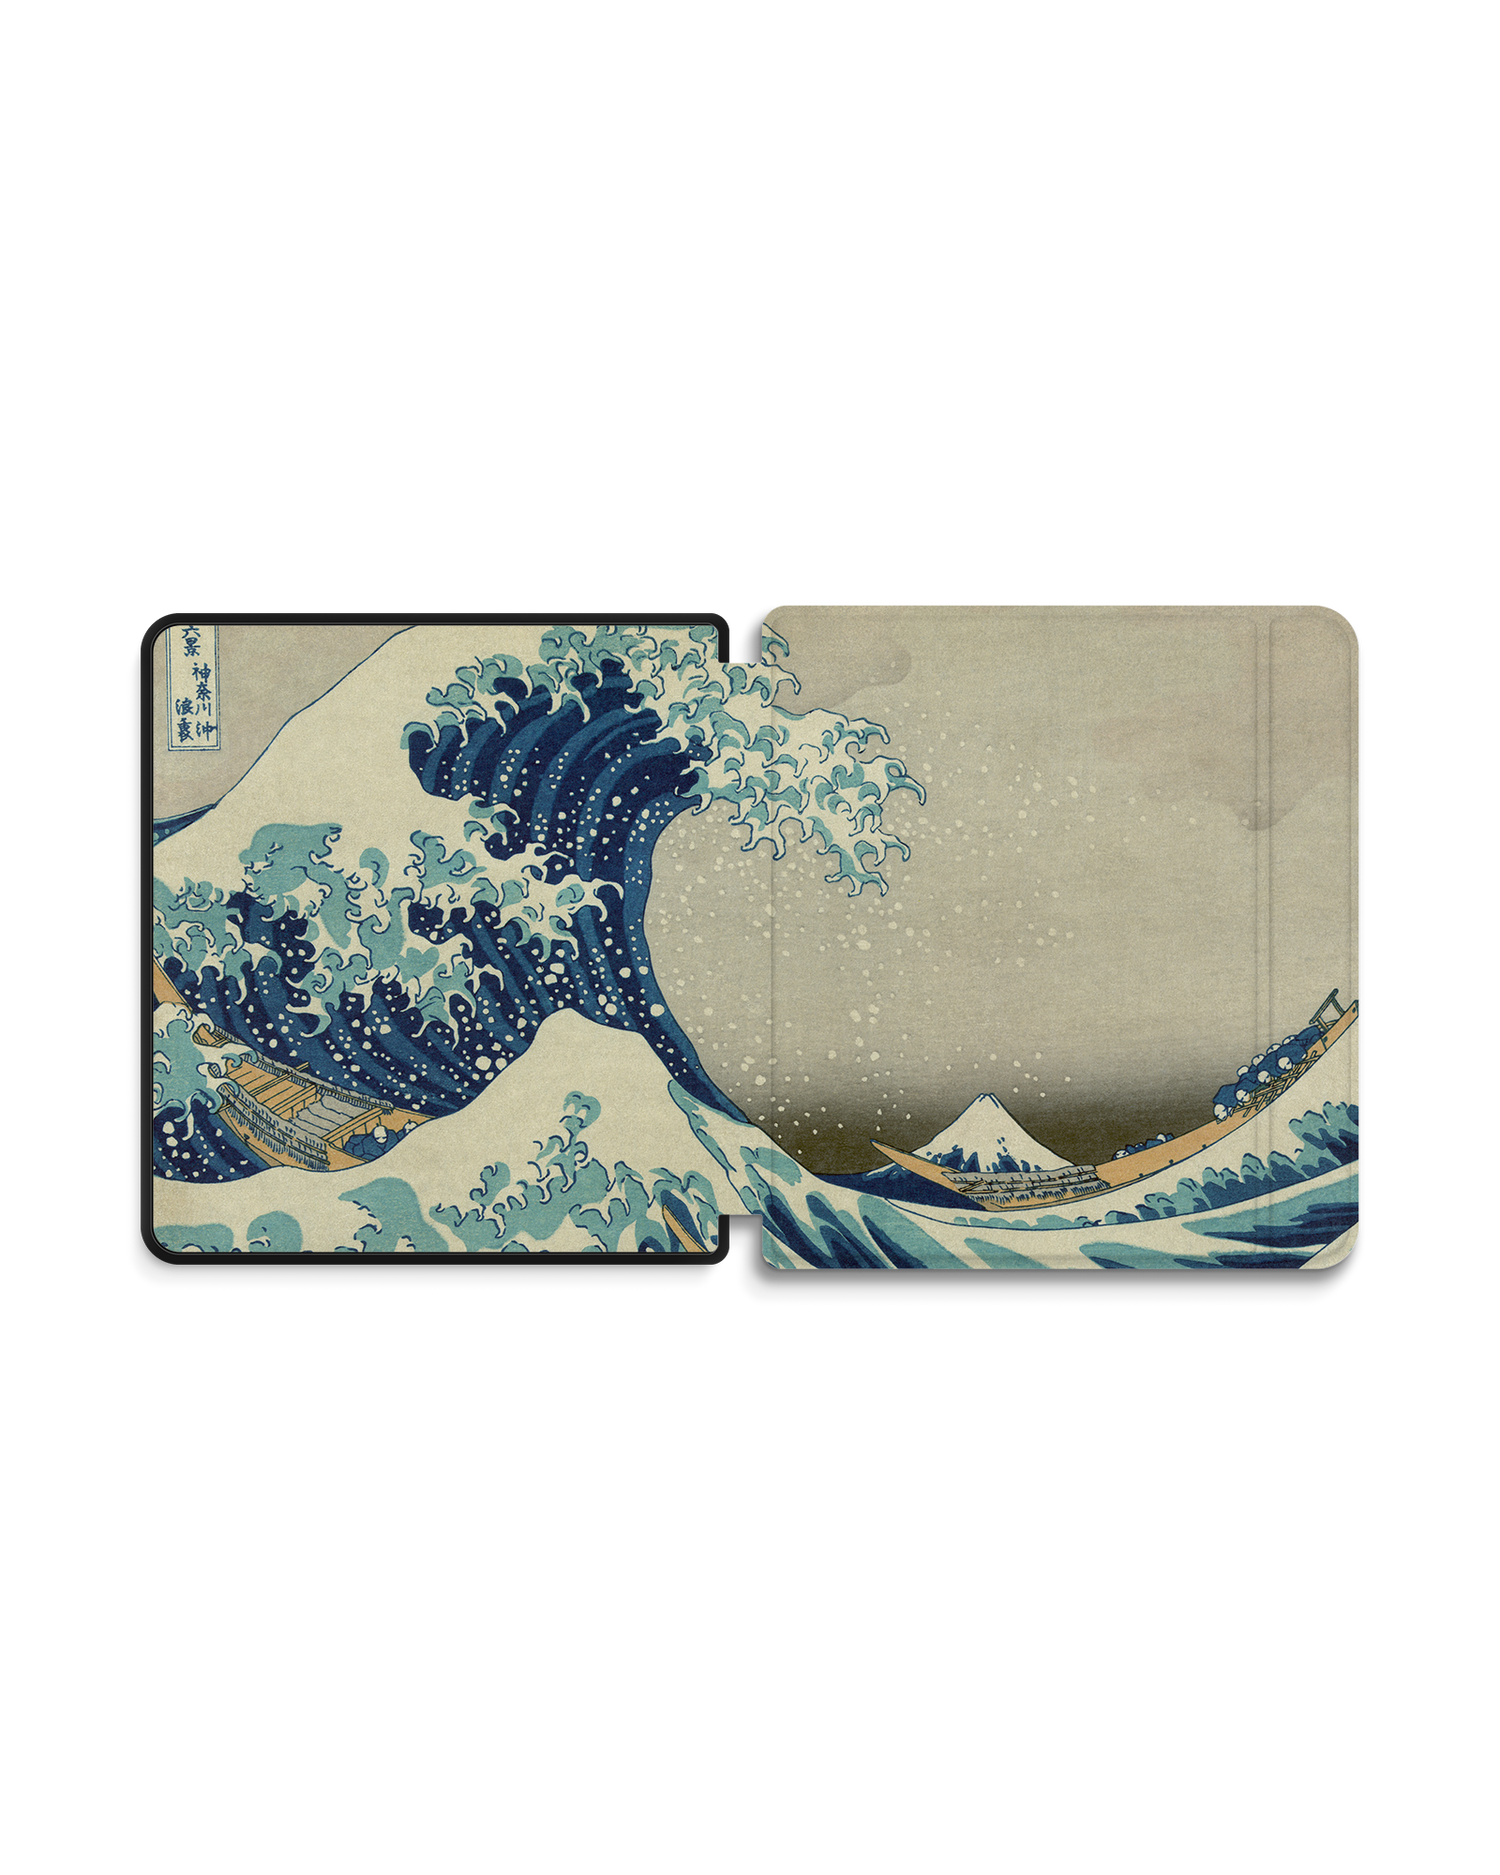 Great Wave Off Kanagawa By Hokusai eBook Reader Smart Case für tolino epos 2: Geöffnet Außenansicht